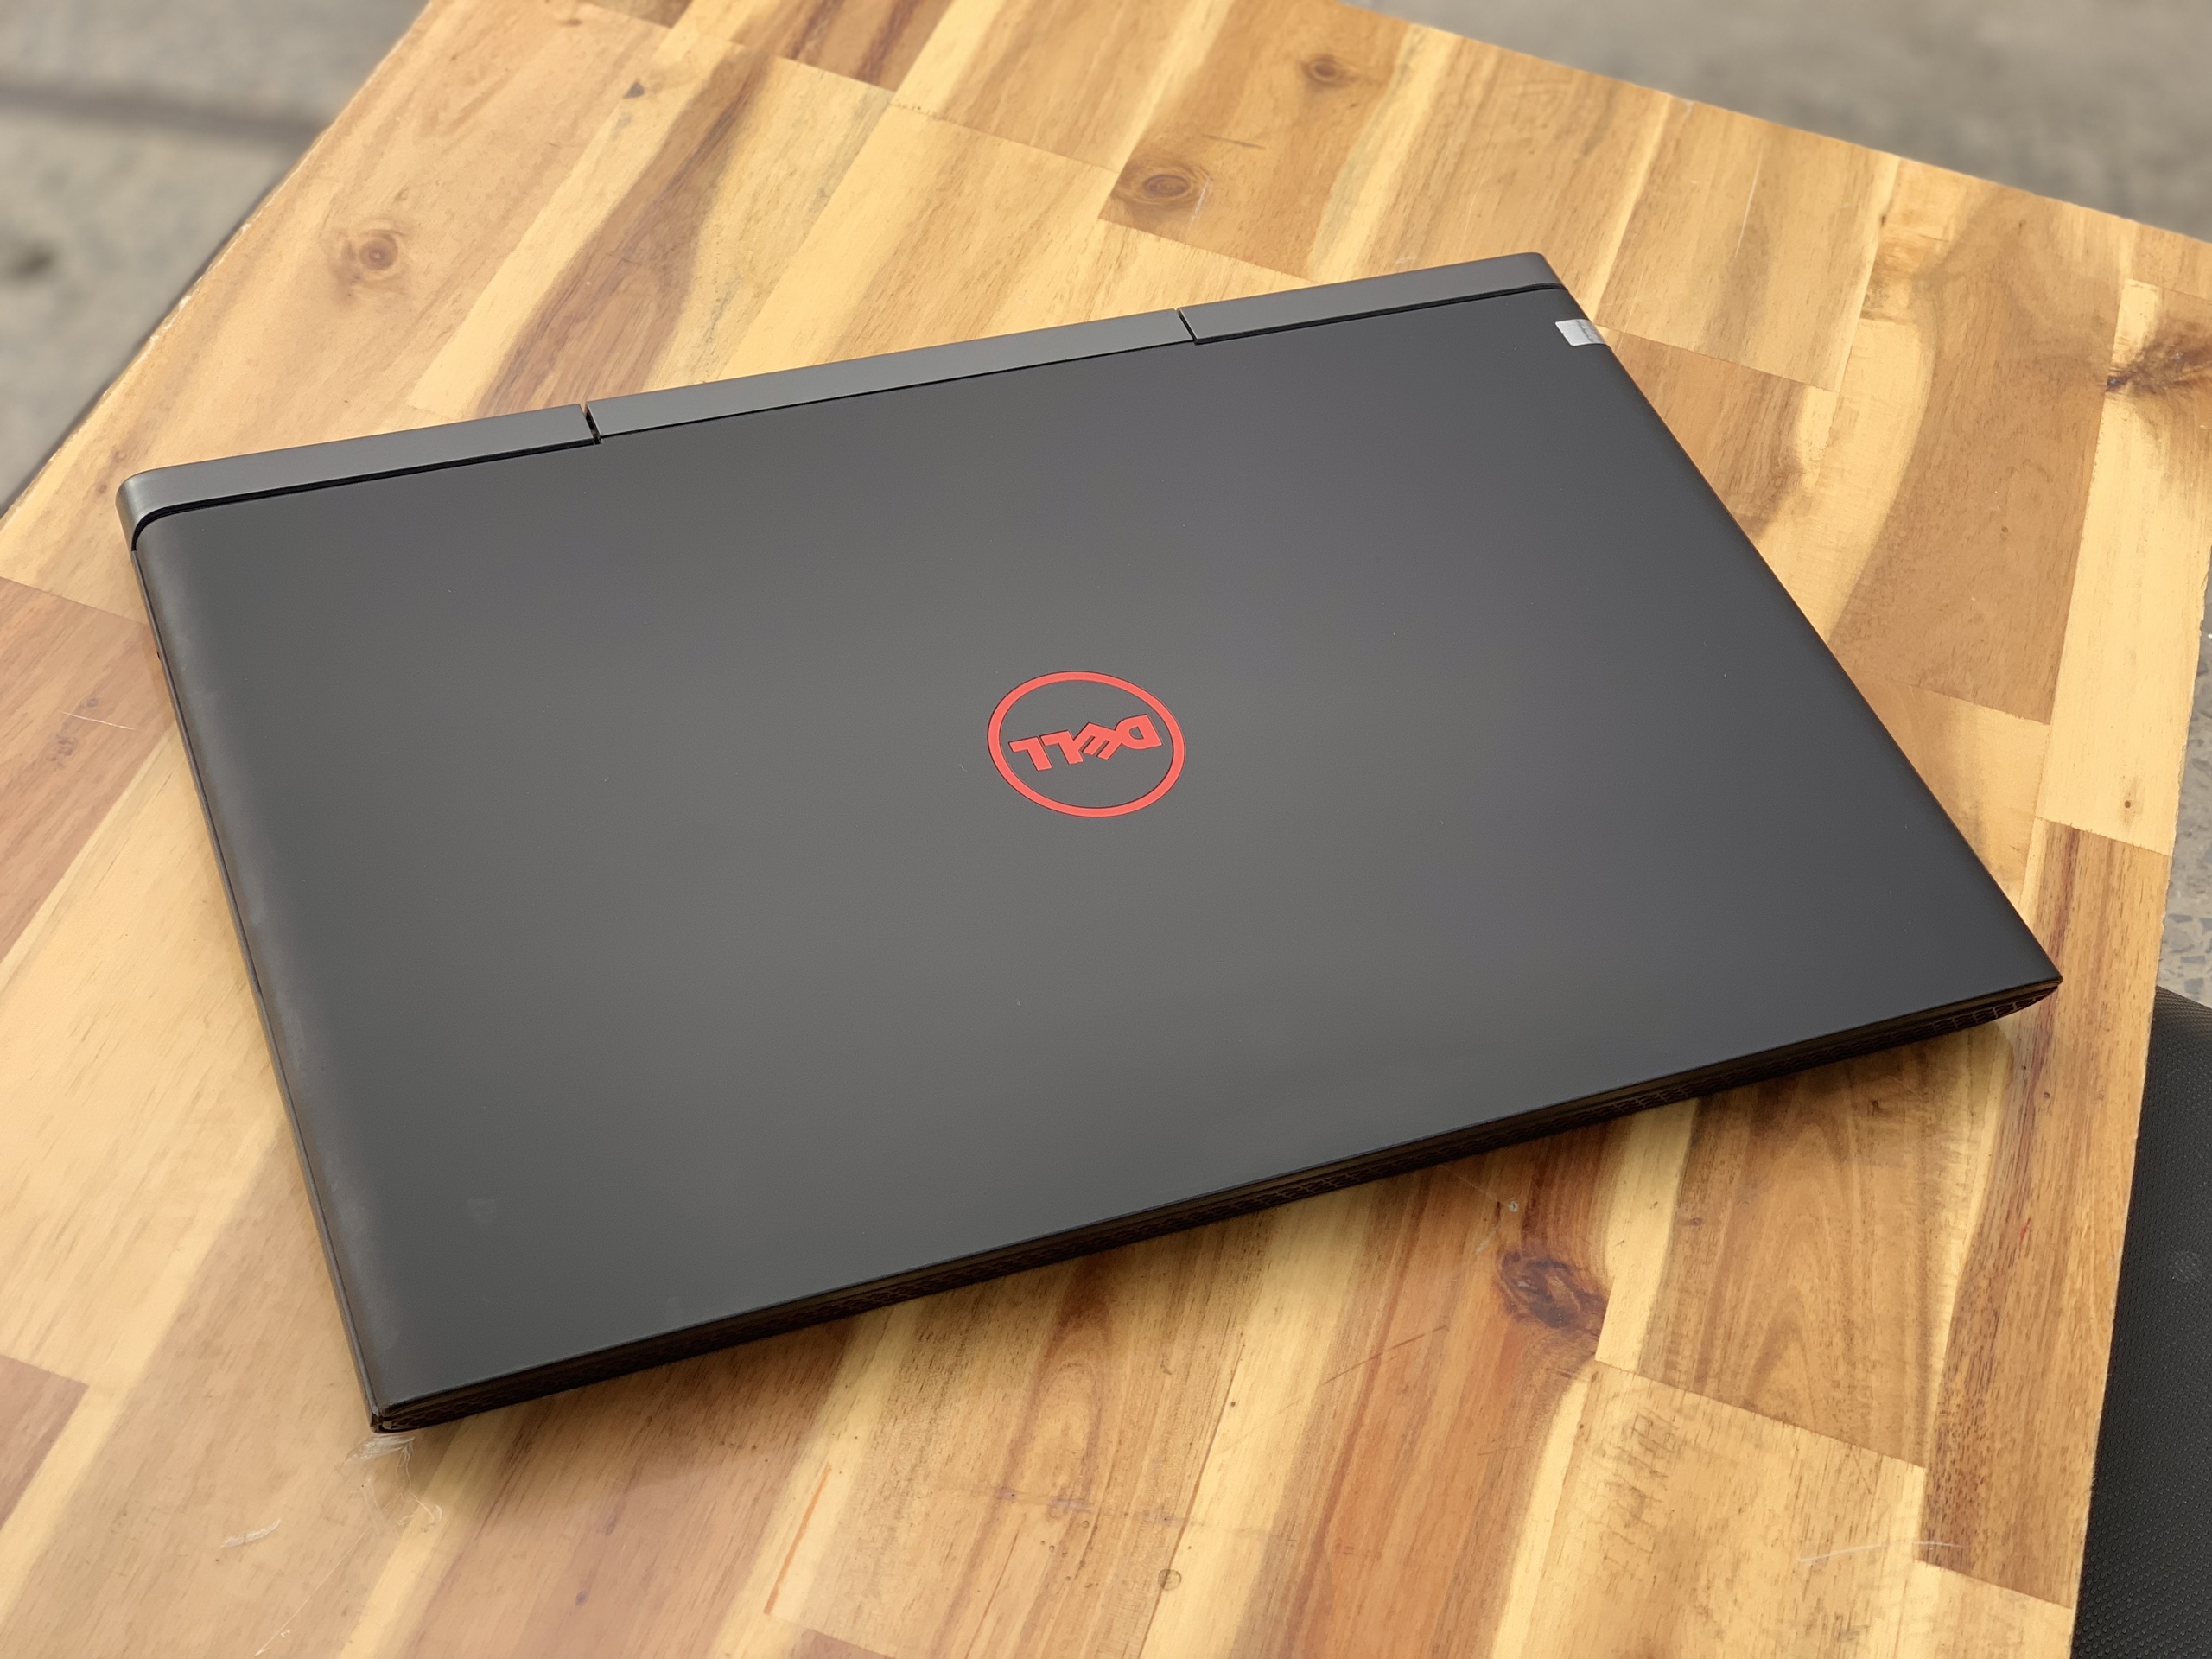 Laptop Dell Gaming 7566, i7 6700HQ 8G SSD128+500G Vga GTX960M 4G FULL HD Đèn phím Đẹp zin 100% Giá rẻ3